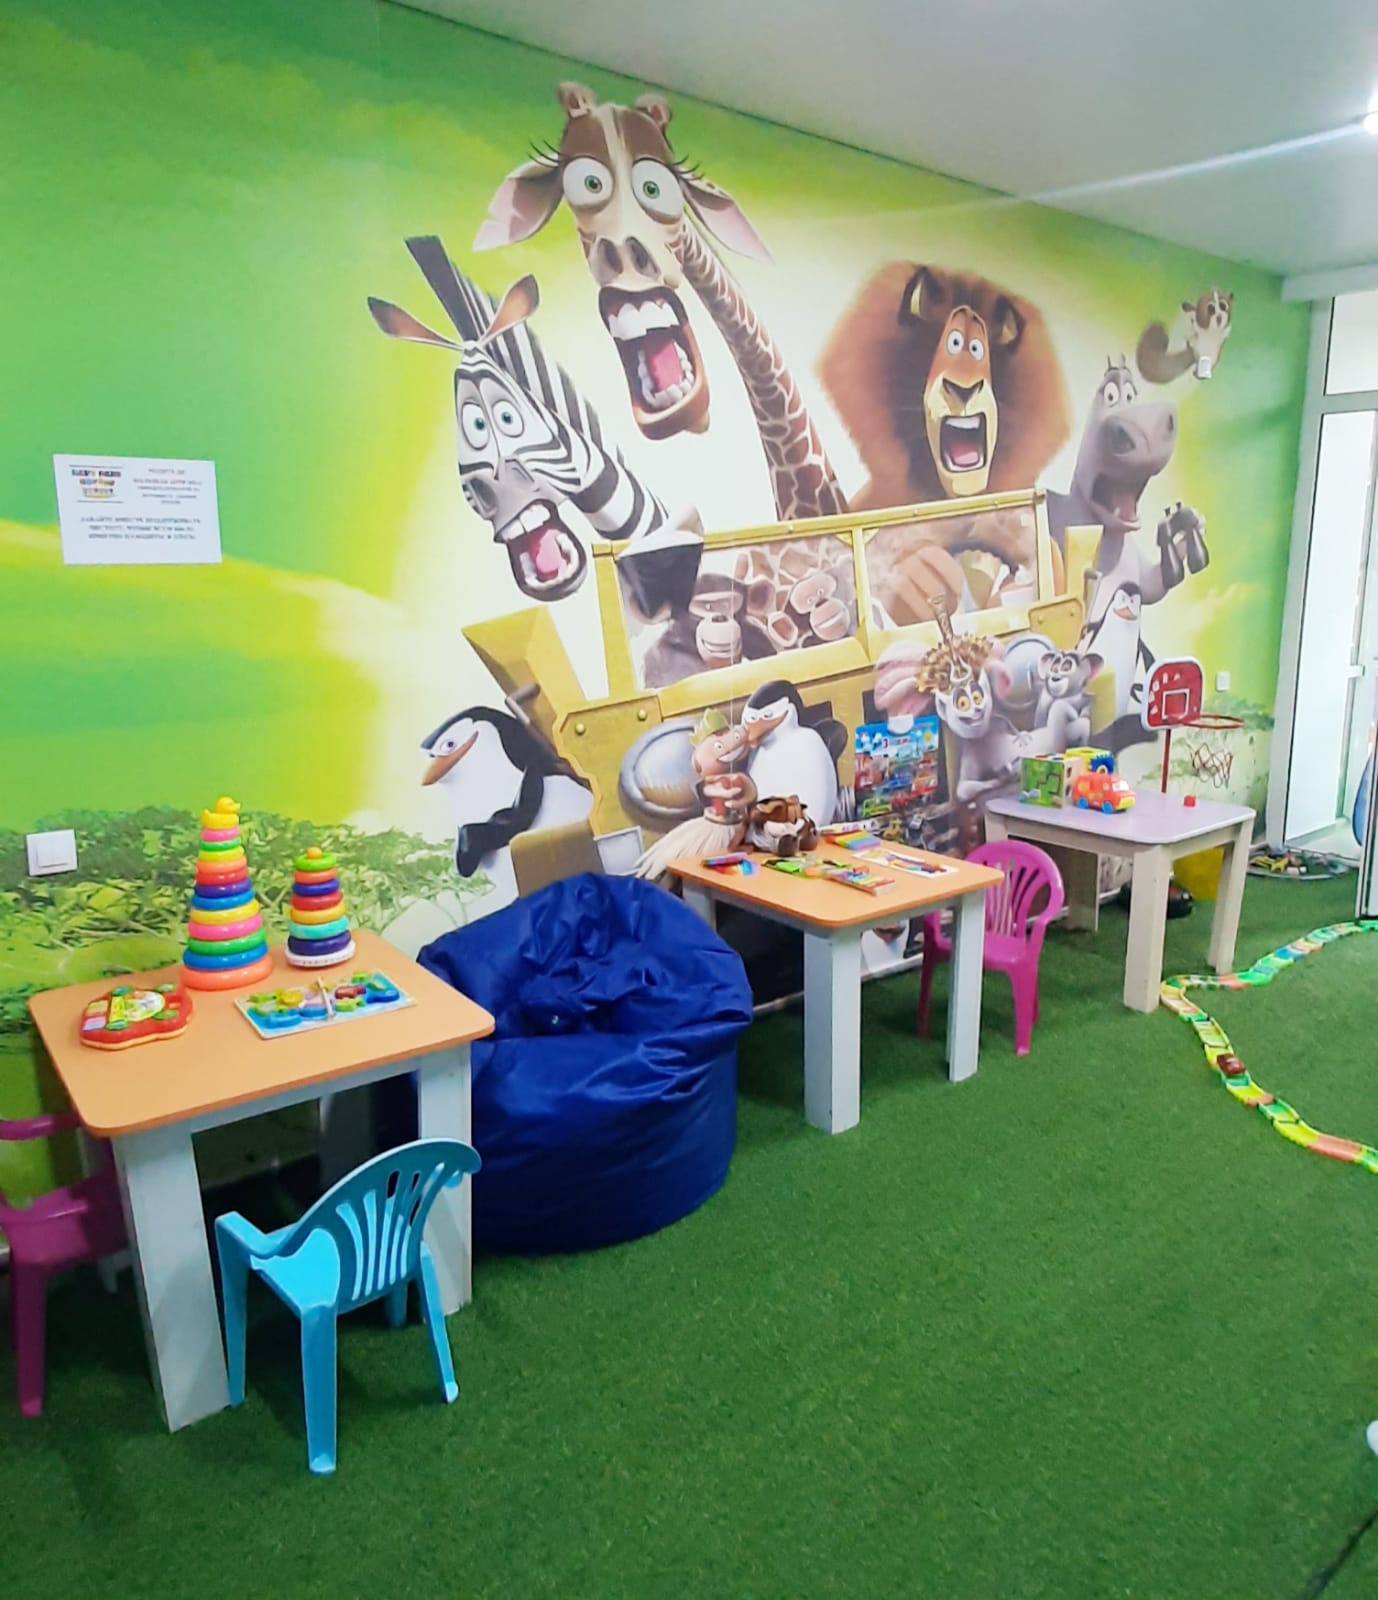 продам бизнес: детский центр активного отдыха